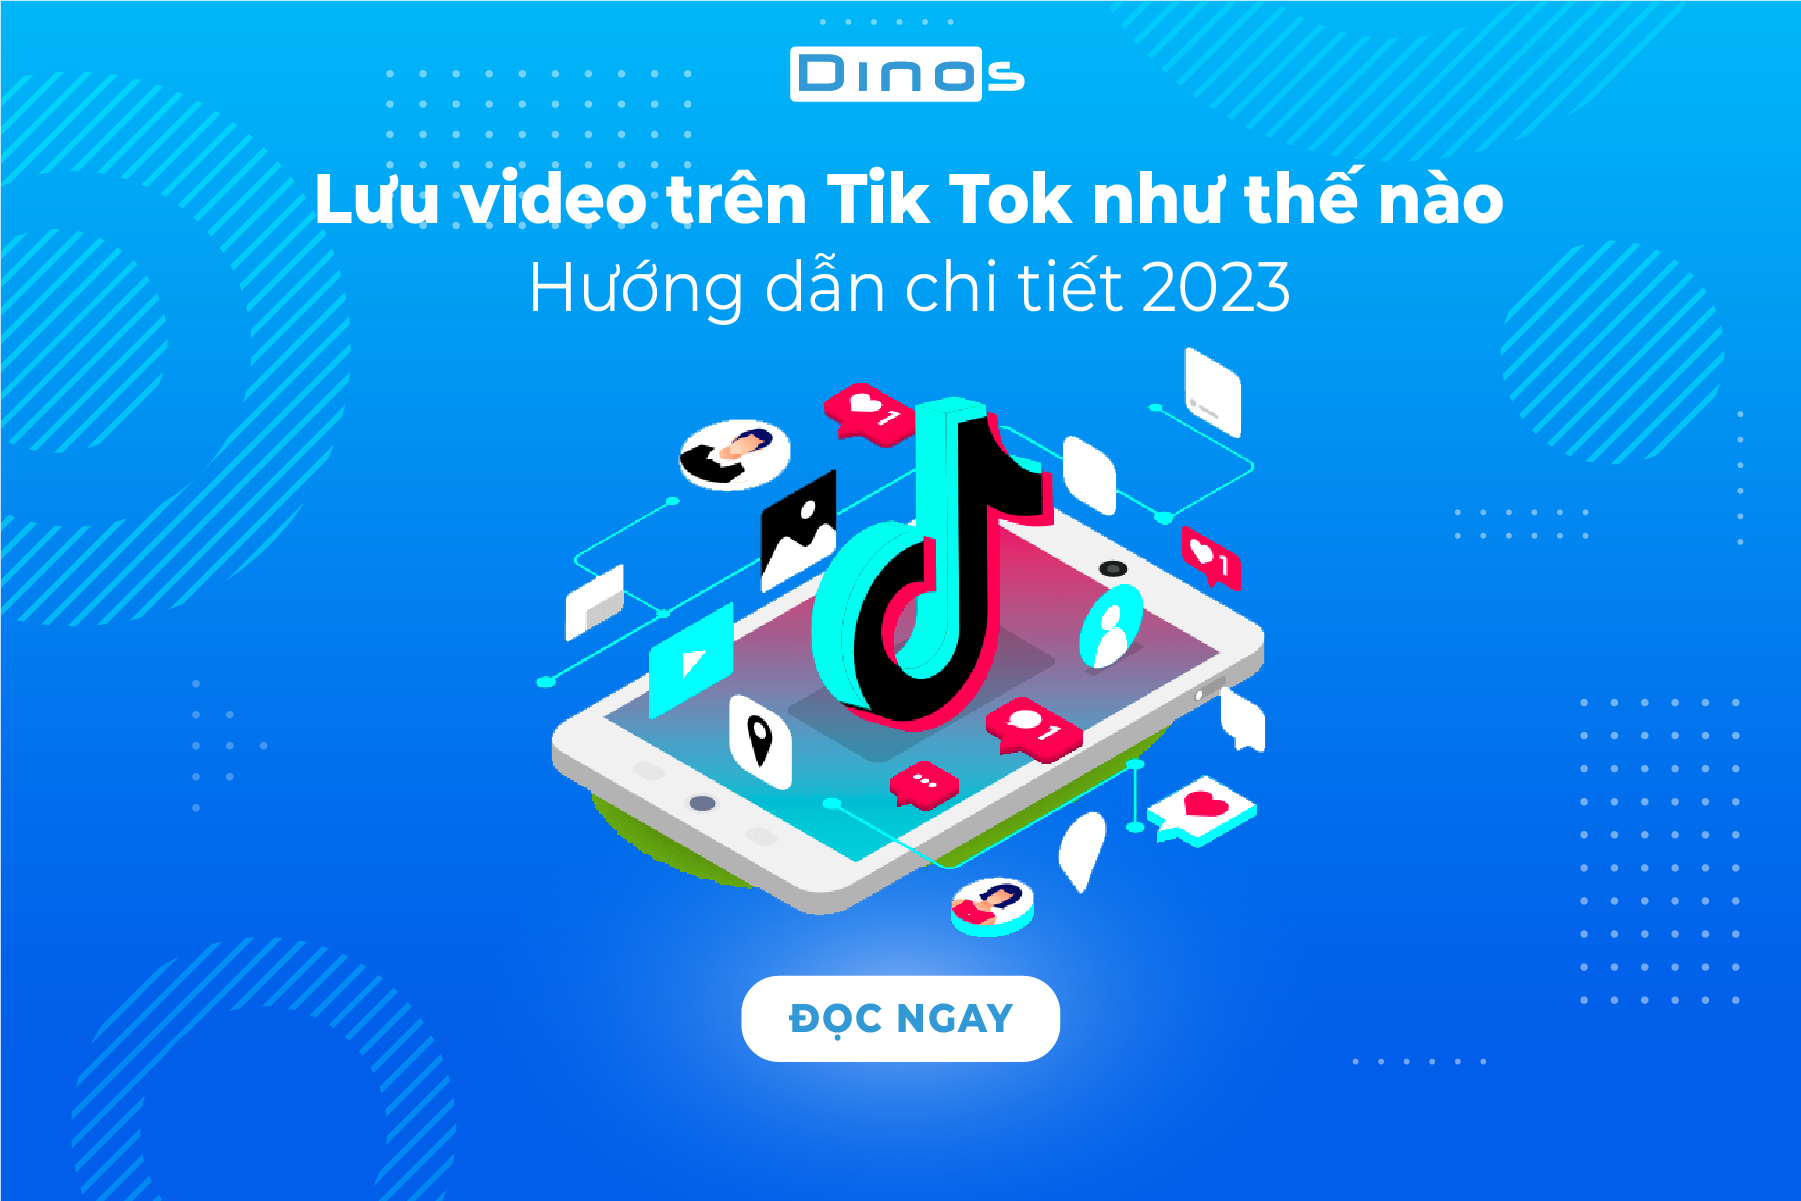 Lưu video trên Tik Tok - Hướng dẫn chi tiết 2023